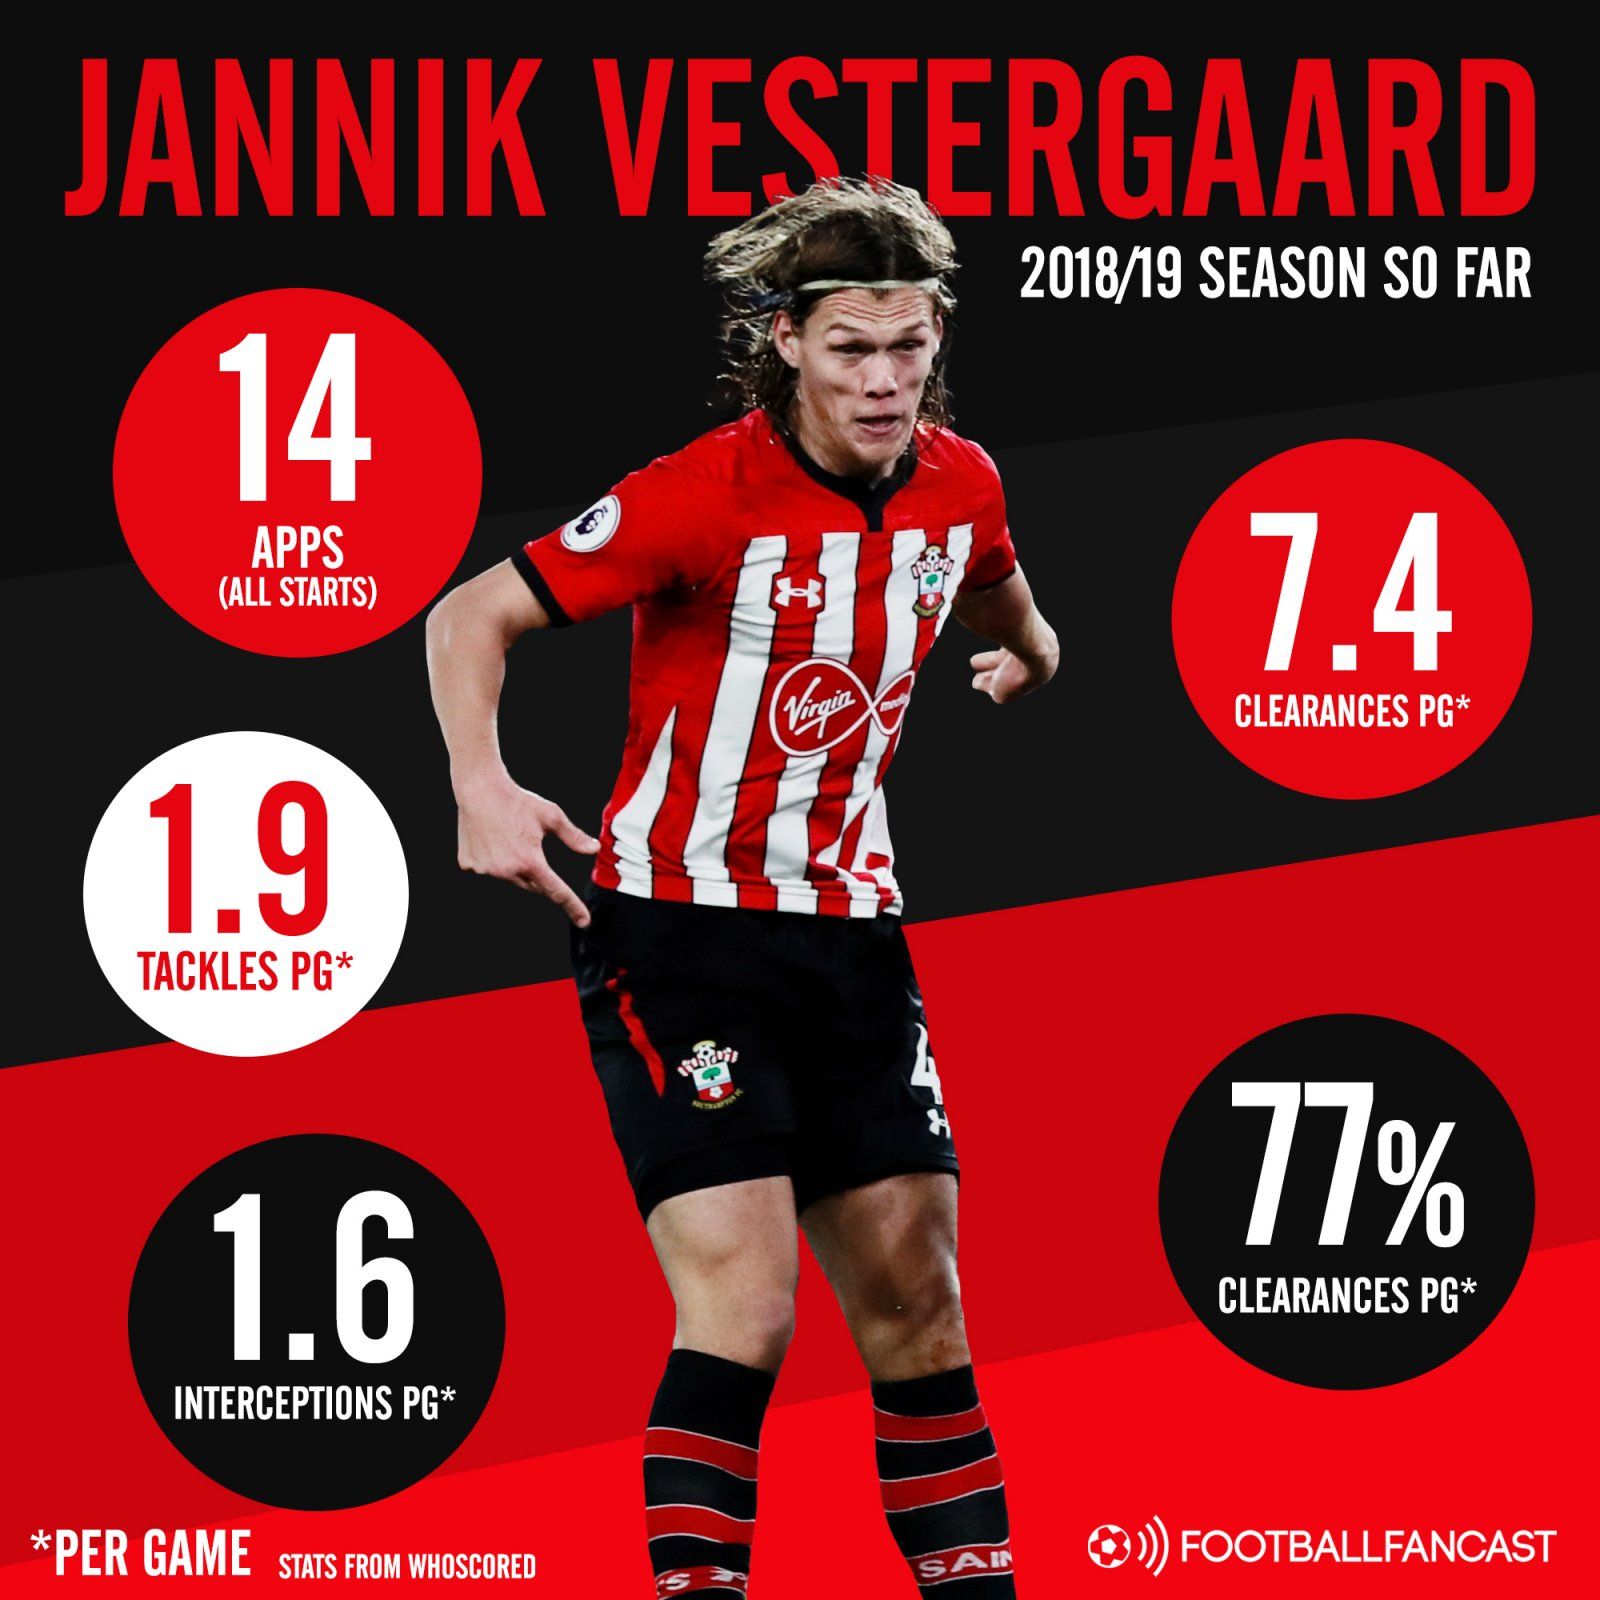 Southampton centre-back Jannik Vestergaard's 2018-19 season stats so far